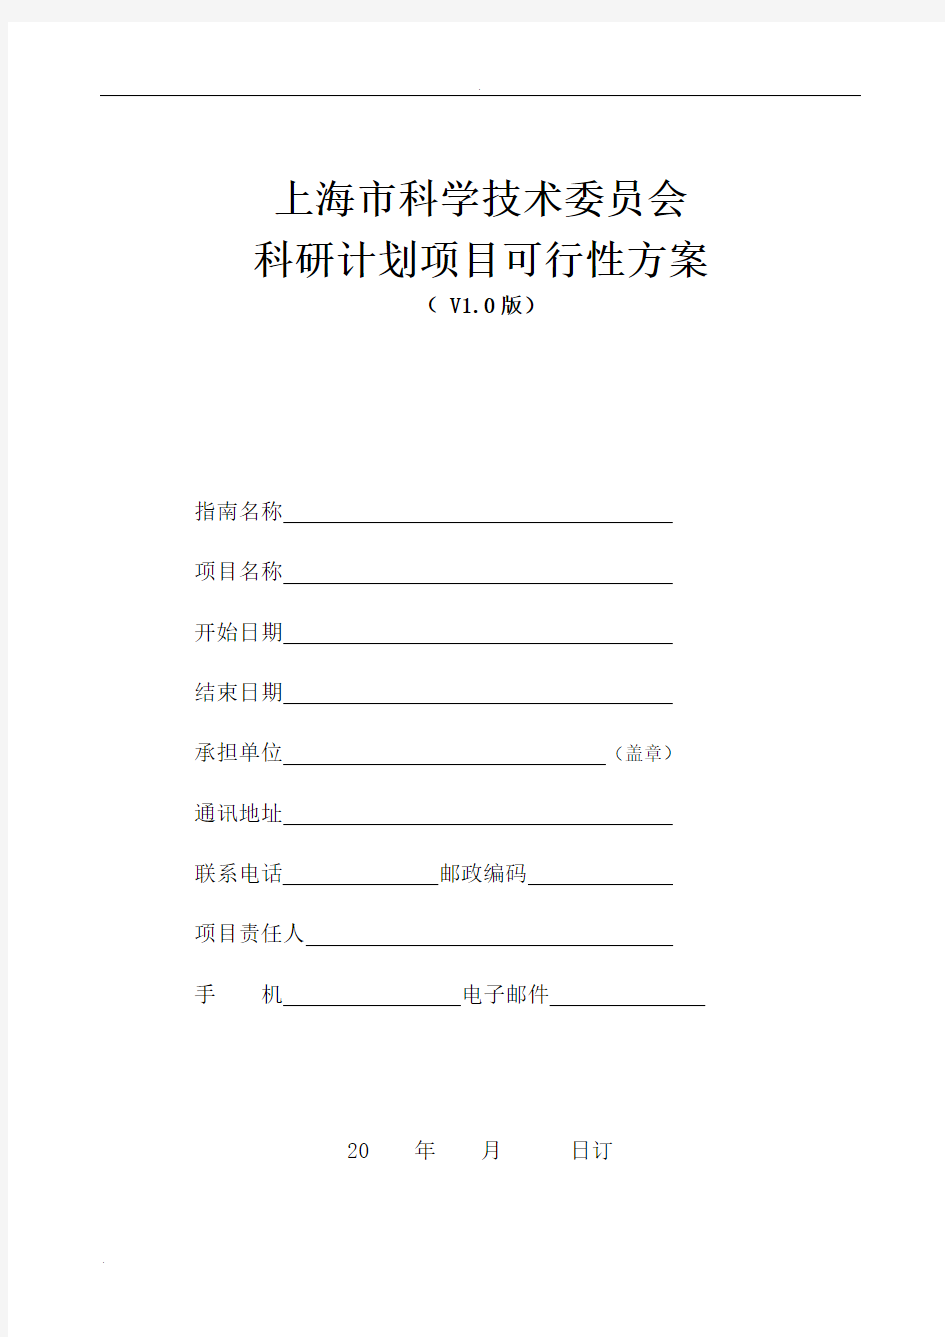 上海市科学技术委员会科研计划项目可行性方案(V1.0版)